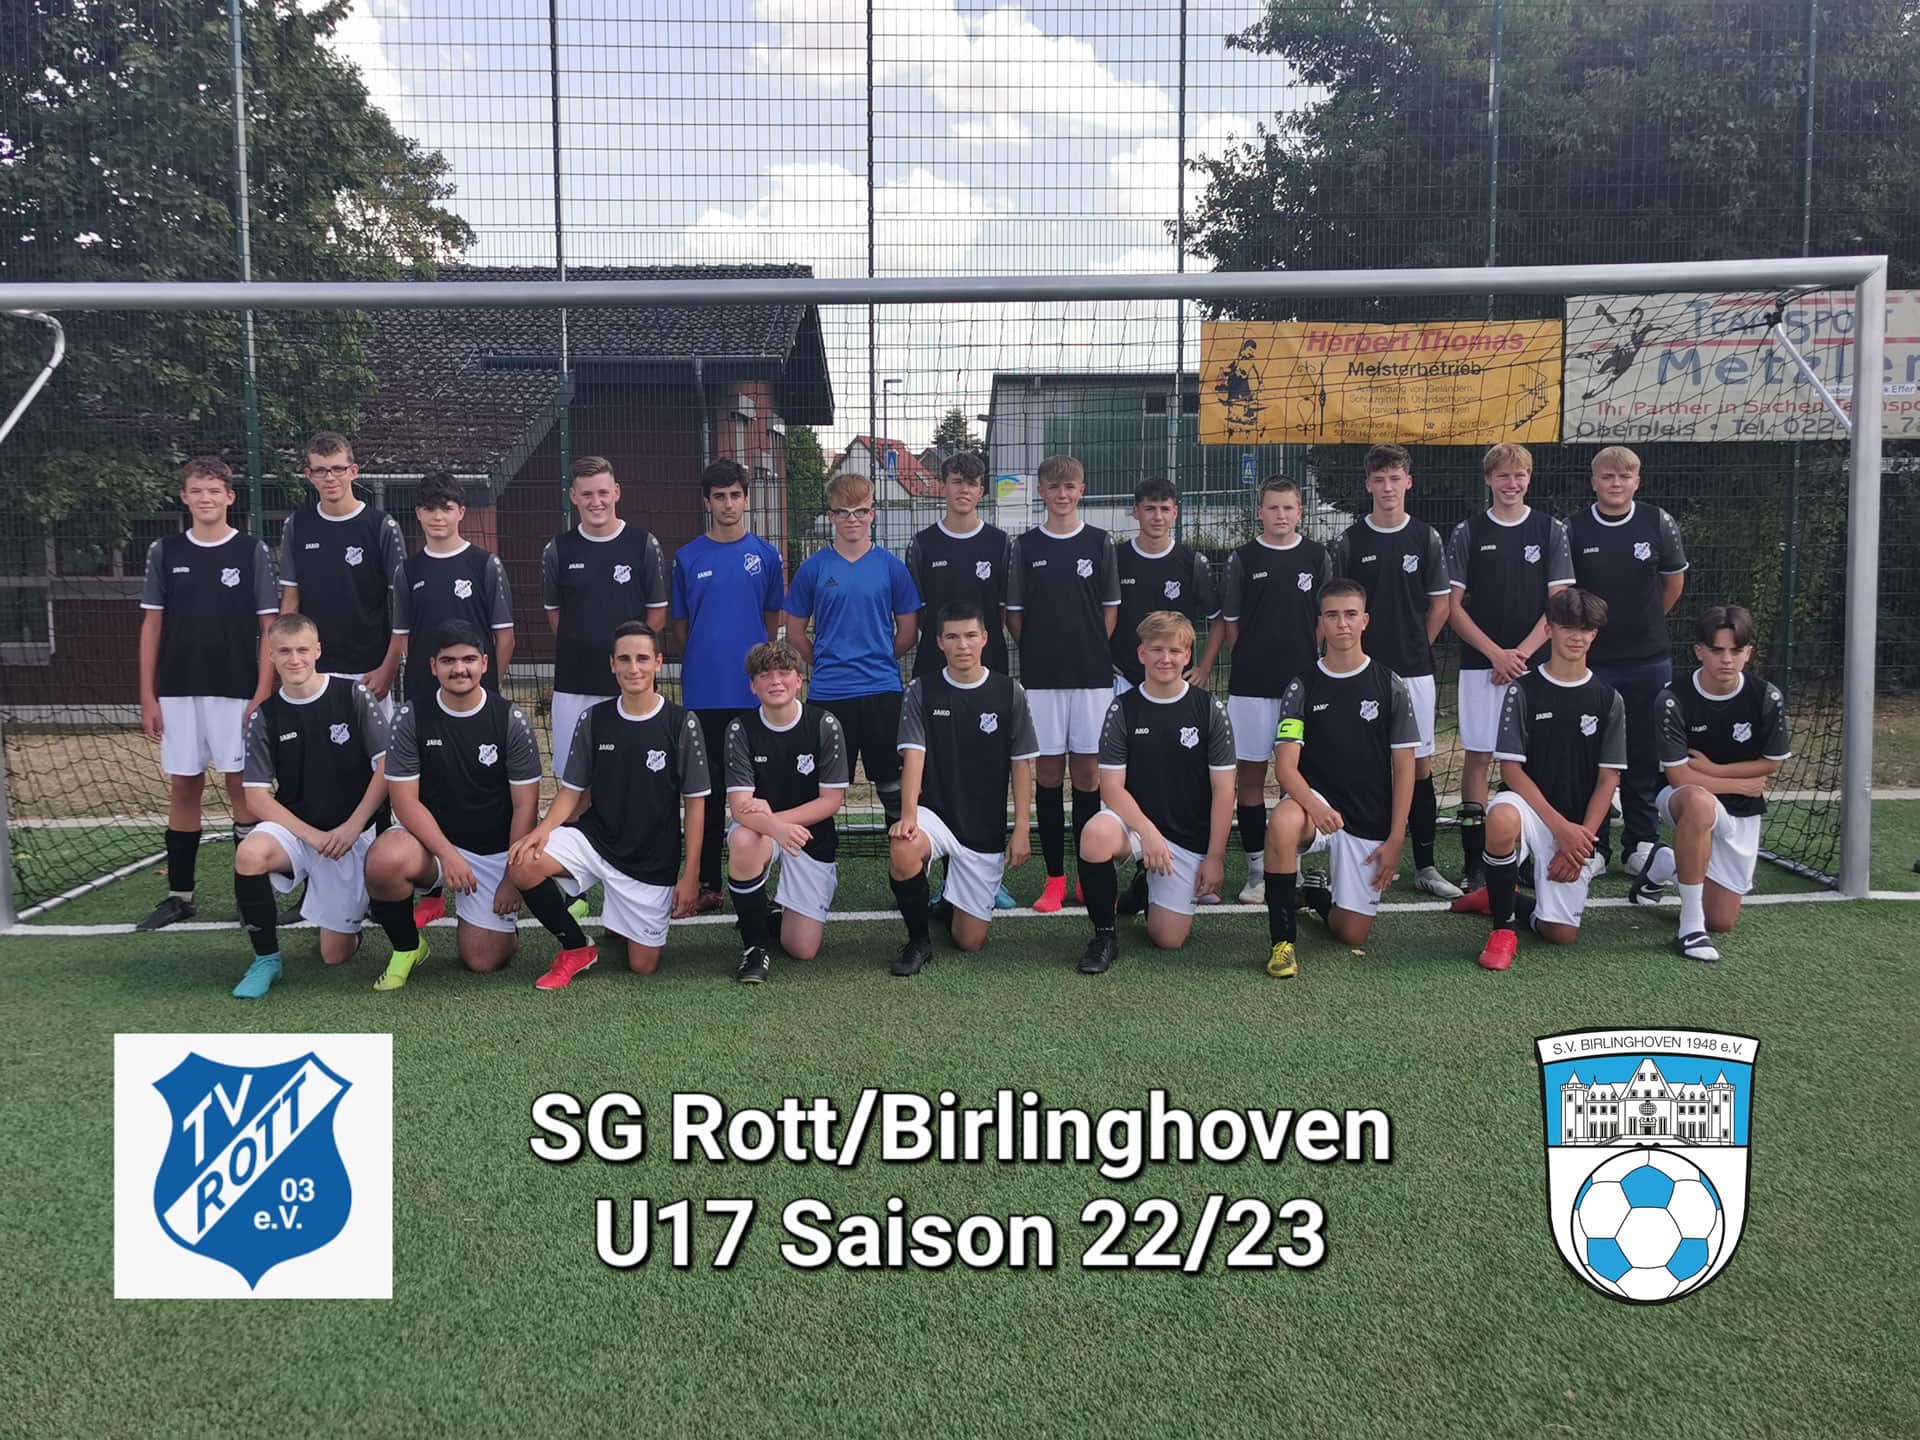 sv-birlinghoven-u17-fussballverein-sportverein-sankt-augustin-juniorion-u17-mannschaft